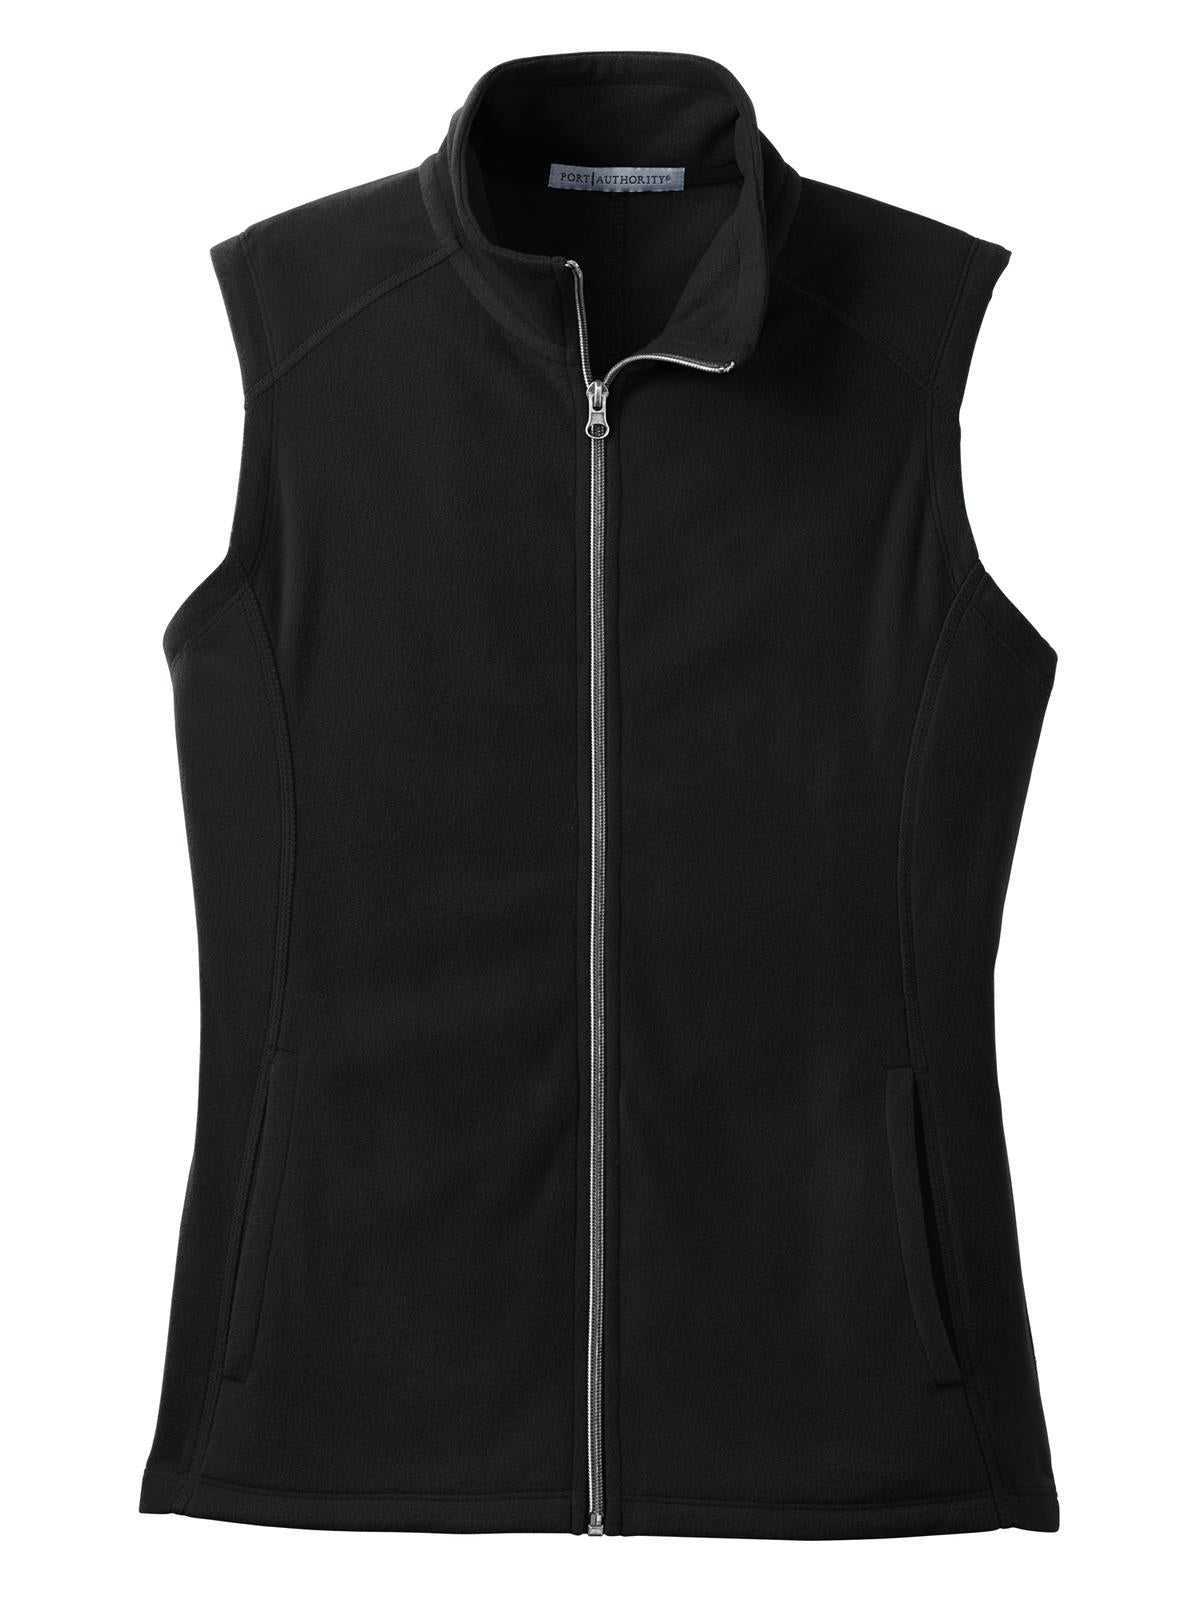 Port Authority L226 Ladies Microfleece Vest - Black - HIT a Double - 5